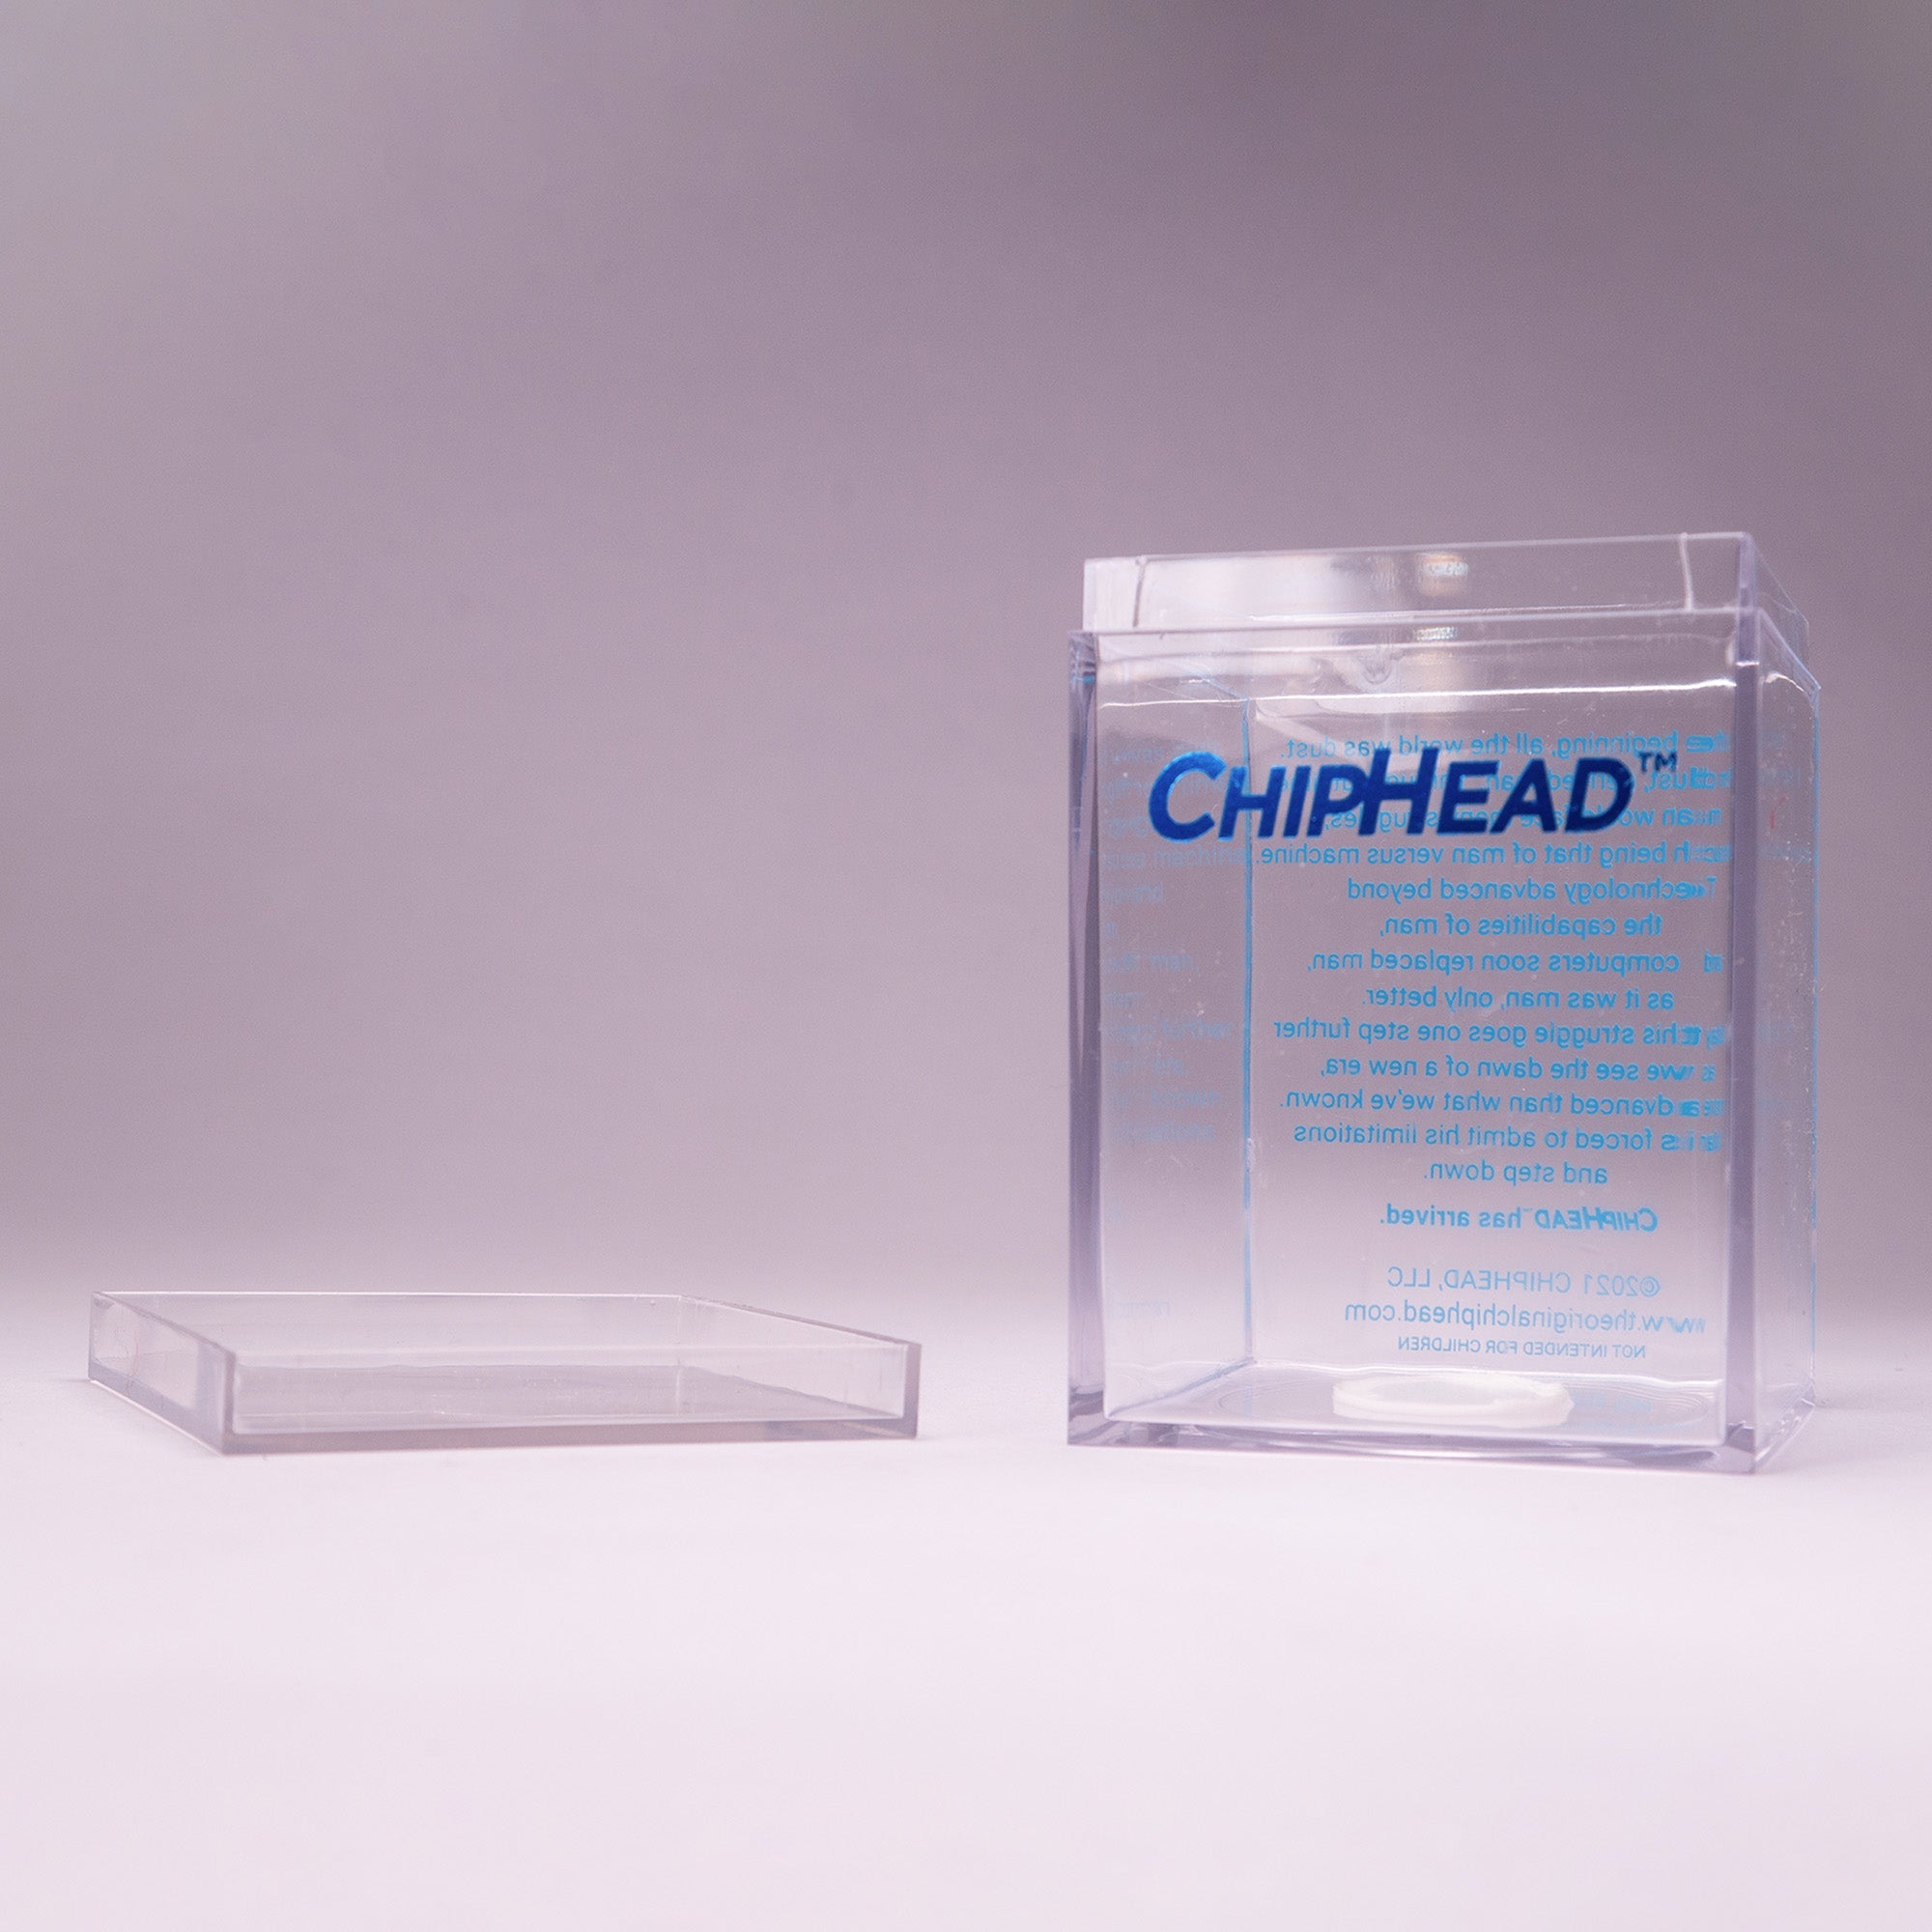 The Original ChipHead